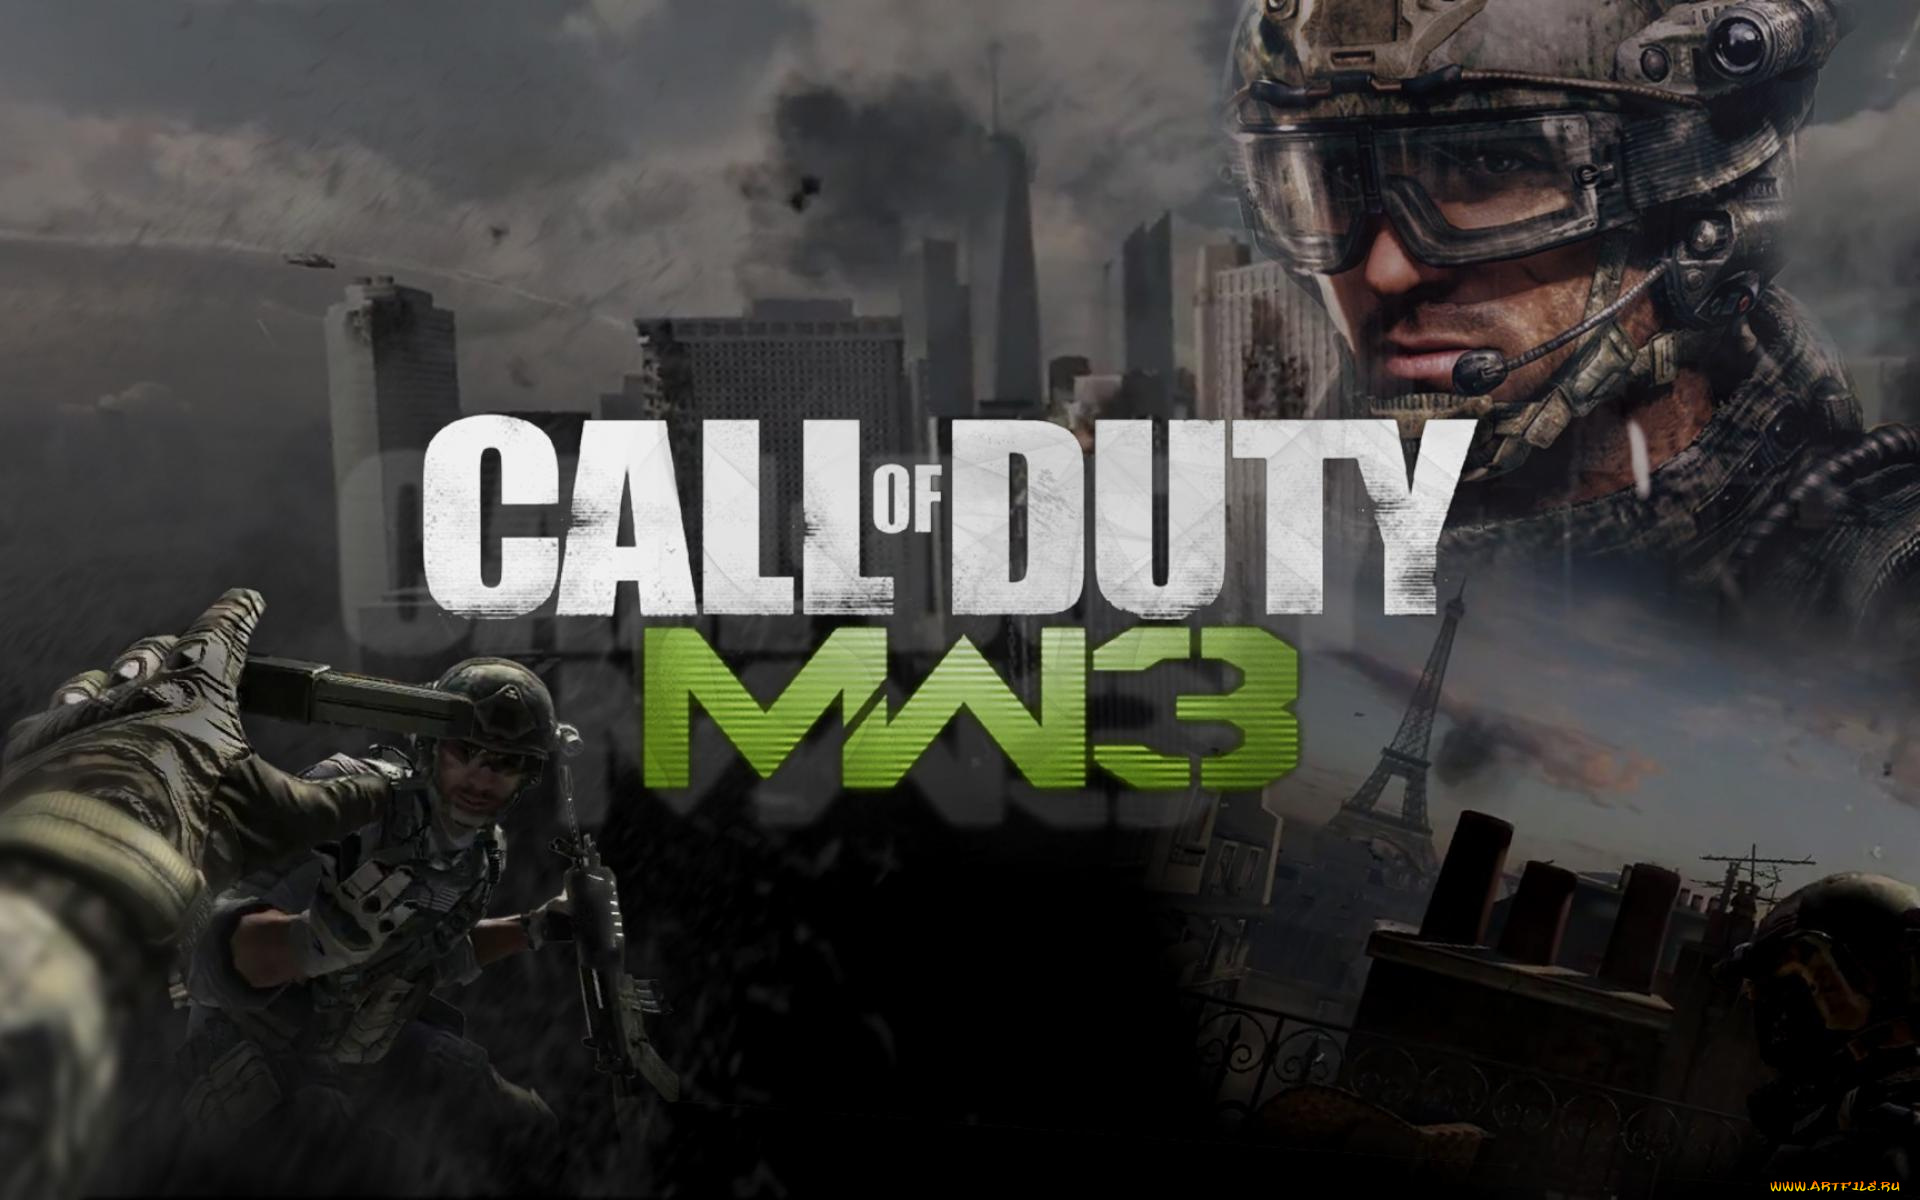 Калов дьюти плей маркет. Call of Duty мв3. Modern Warfare 3. Call of Duty mw3 обои. Call of Duty Modern варфаер 3.